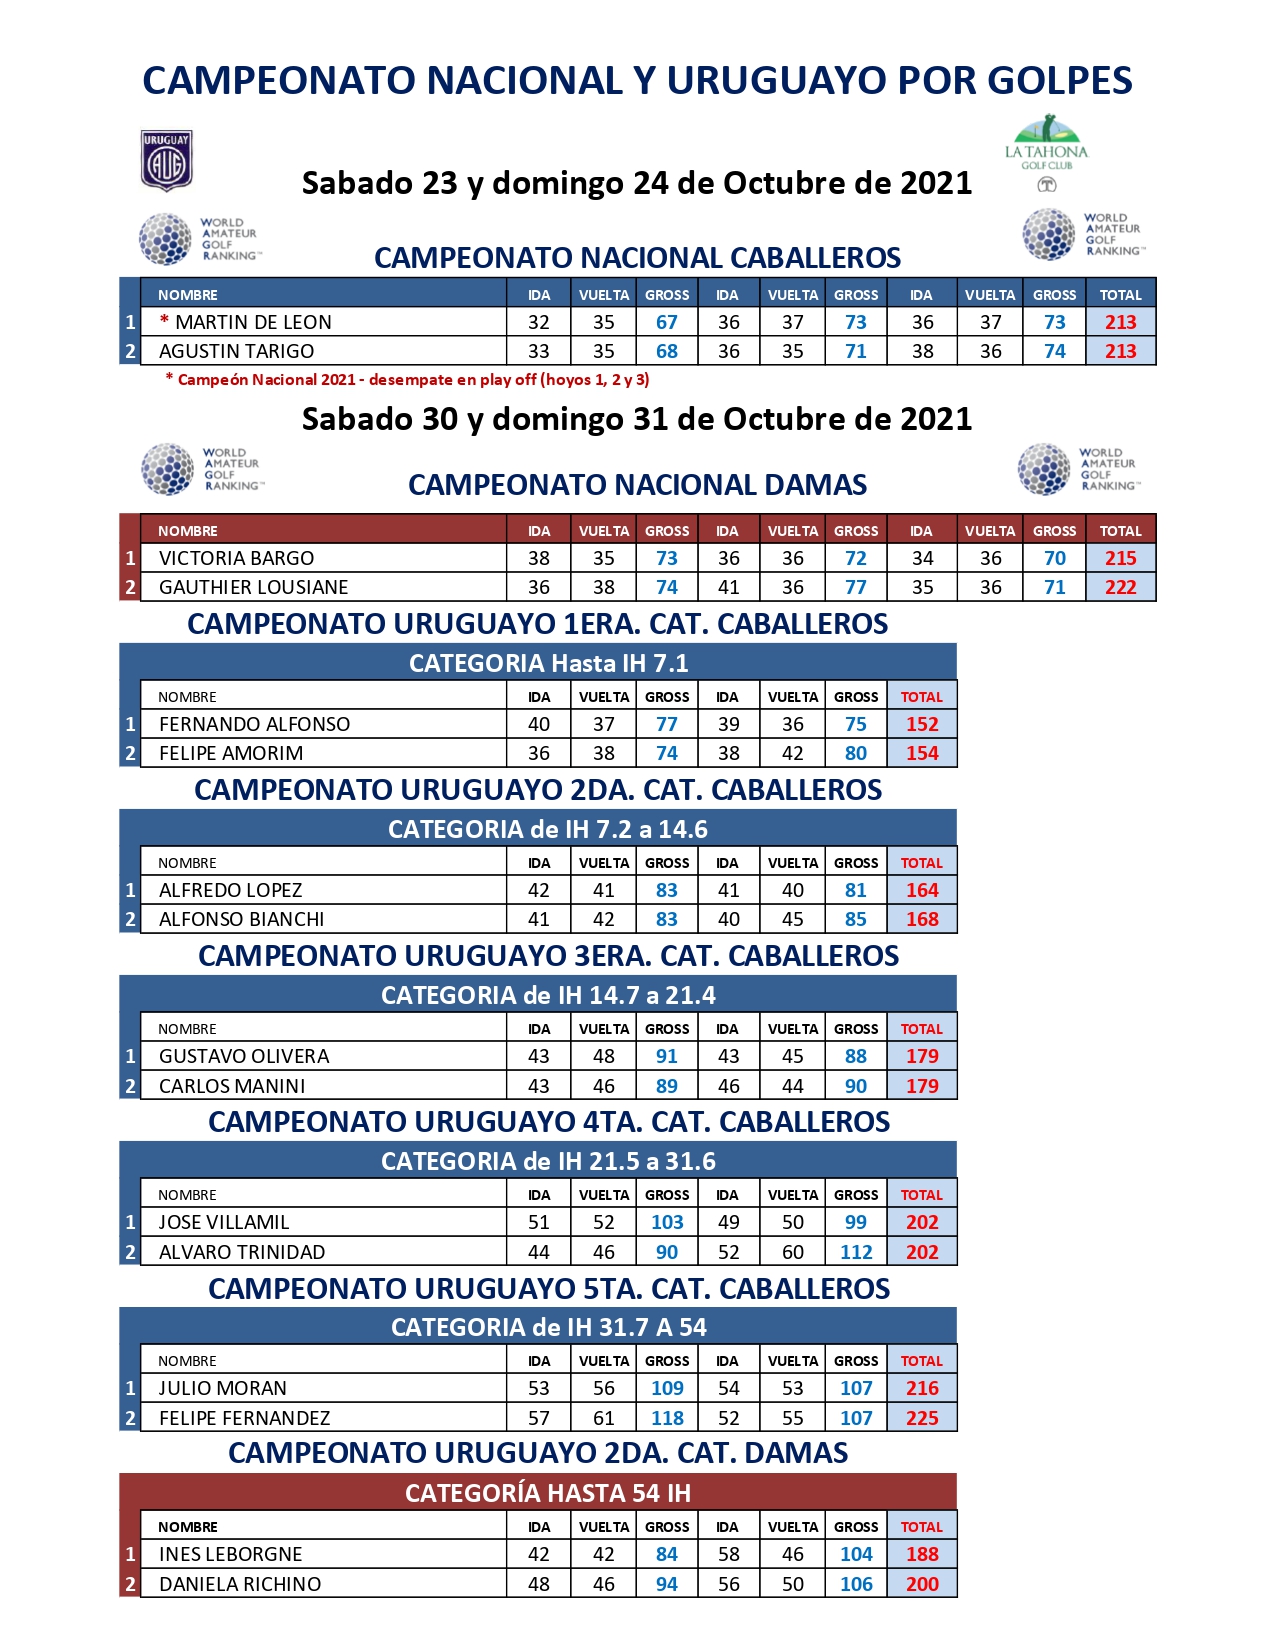 Campeonato Nacional Por Golpes 2021 - LTGC - Del sbado 23 al domingo 31/10.